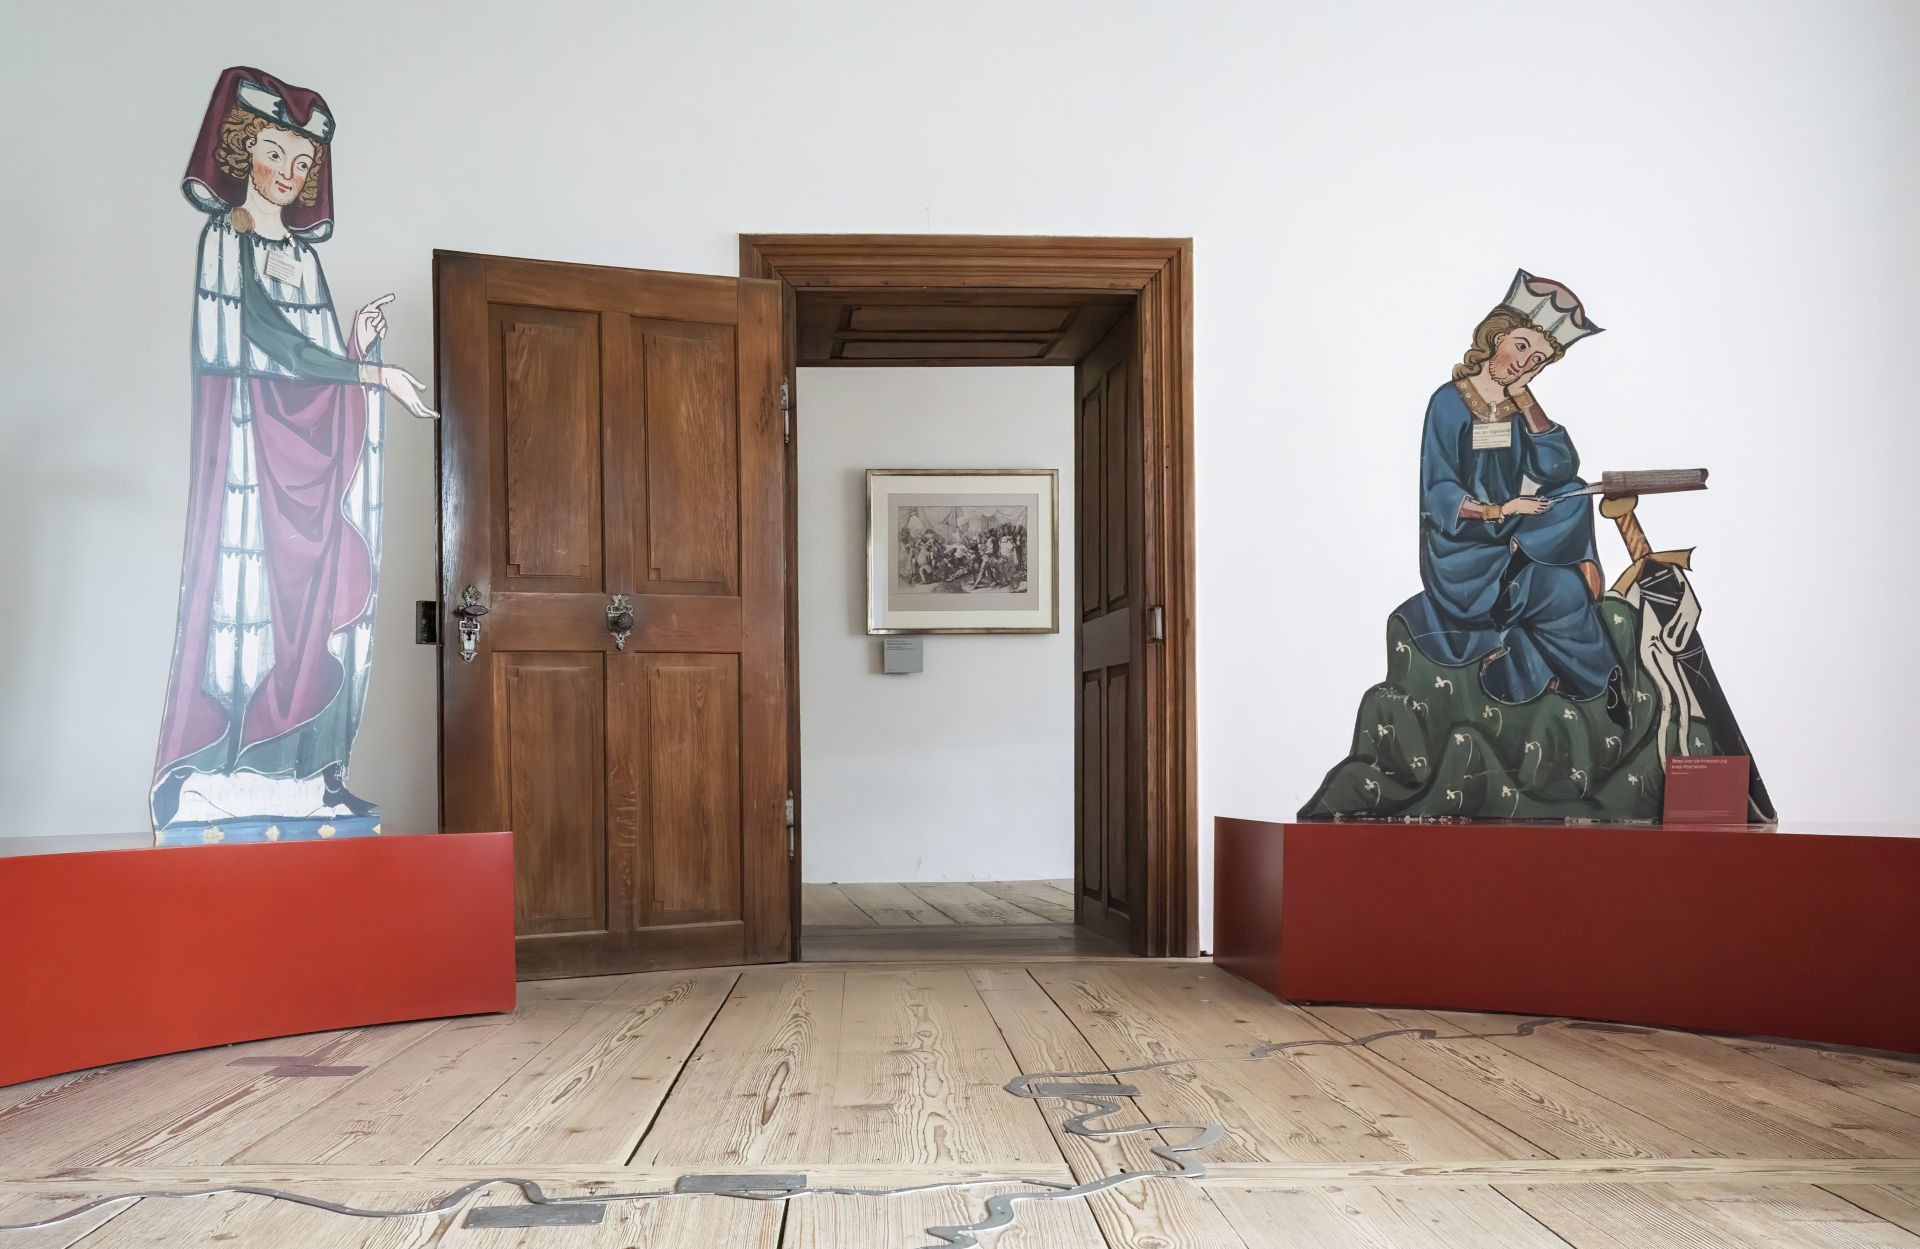 Das Bild zeigt eine Ausstellung von Burg Prunn. Zu sehen ist eine offene Tür, links und rechts neben der Tür sind große Modelle mittelalterlicher Menschen zu sehen.